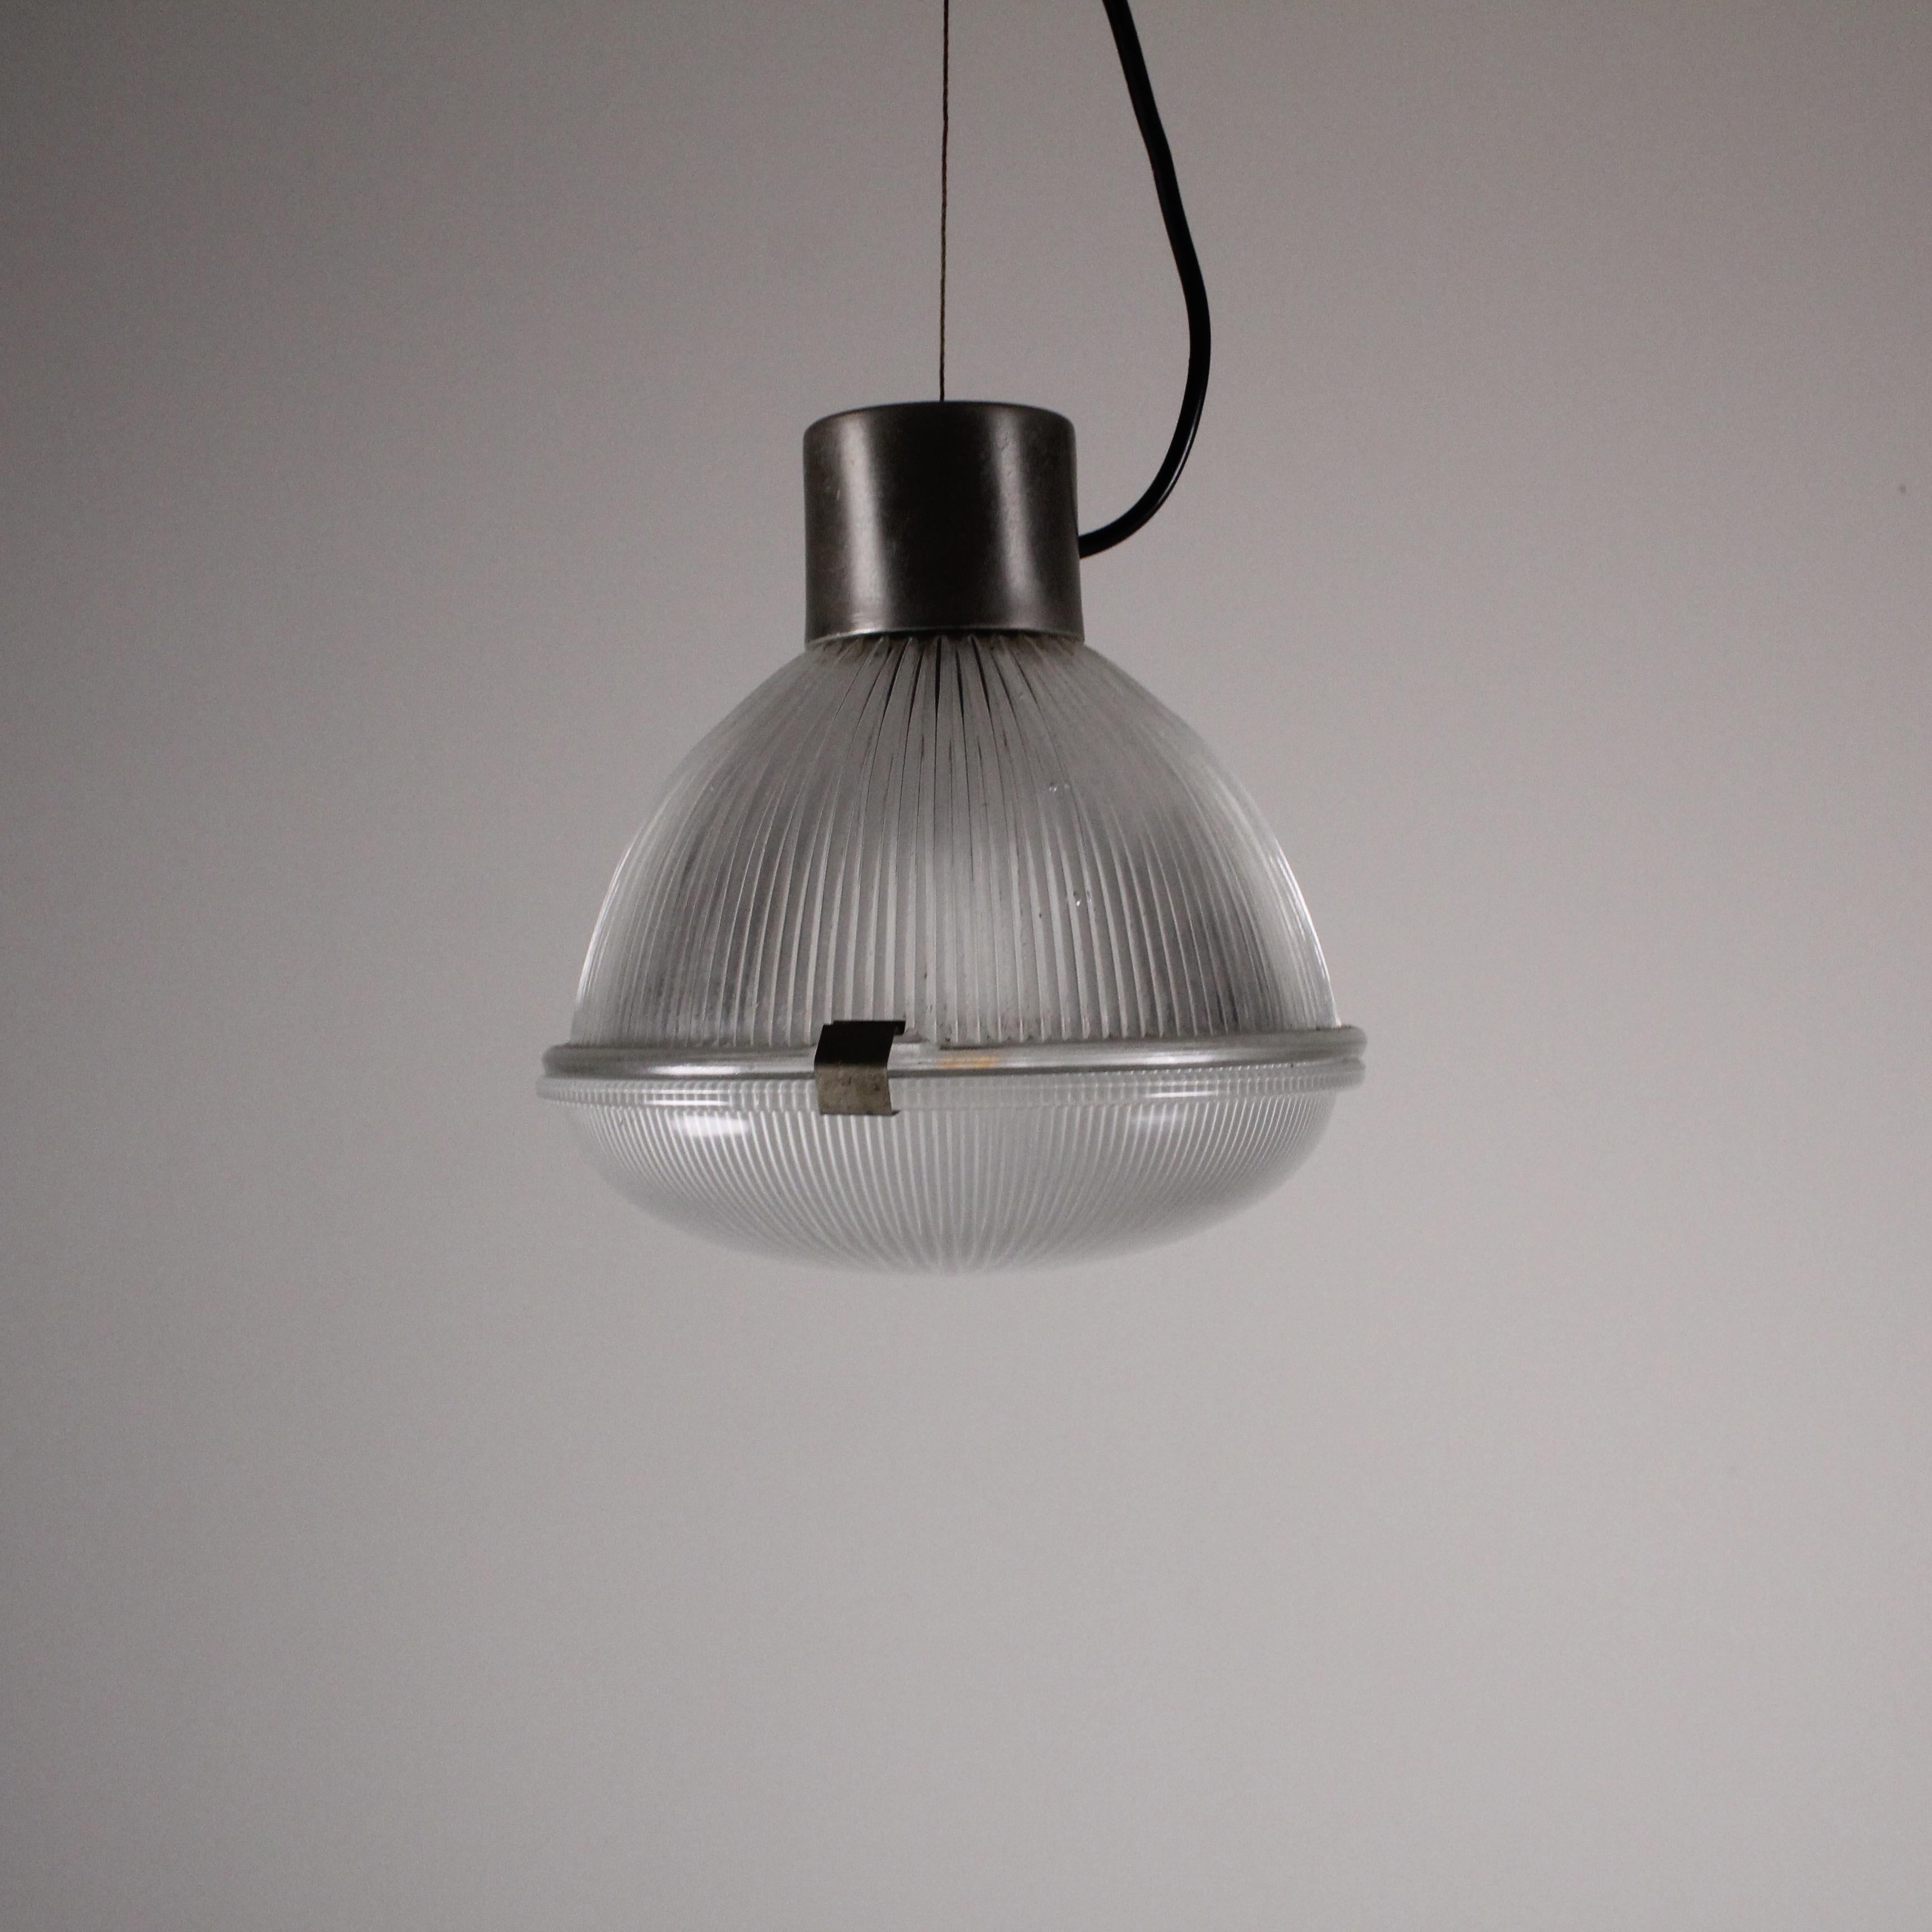 La lampe suspendue de Tito Agnoli, une création visionnaire de 1959 par Oluce, incarne l'éclat du design du milieu du siècle. L'approche avant-gardiste d'Icone est évidente dans les lignes épurées et minimalistes et l'esthétique intemporelle de